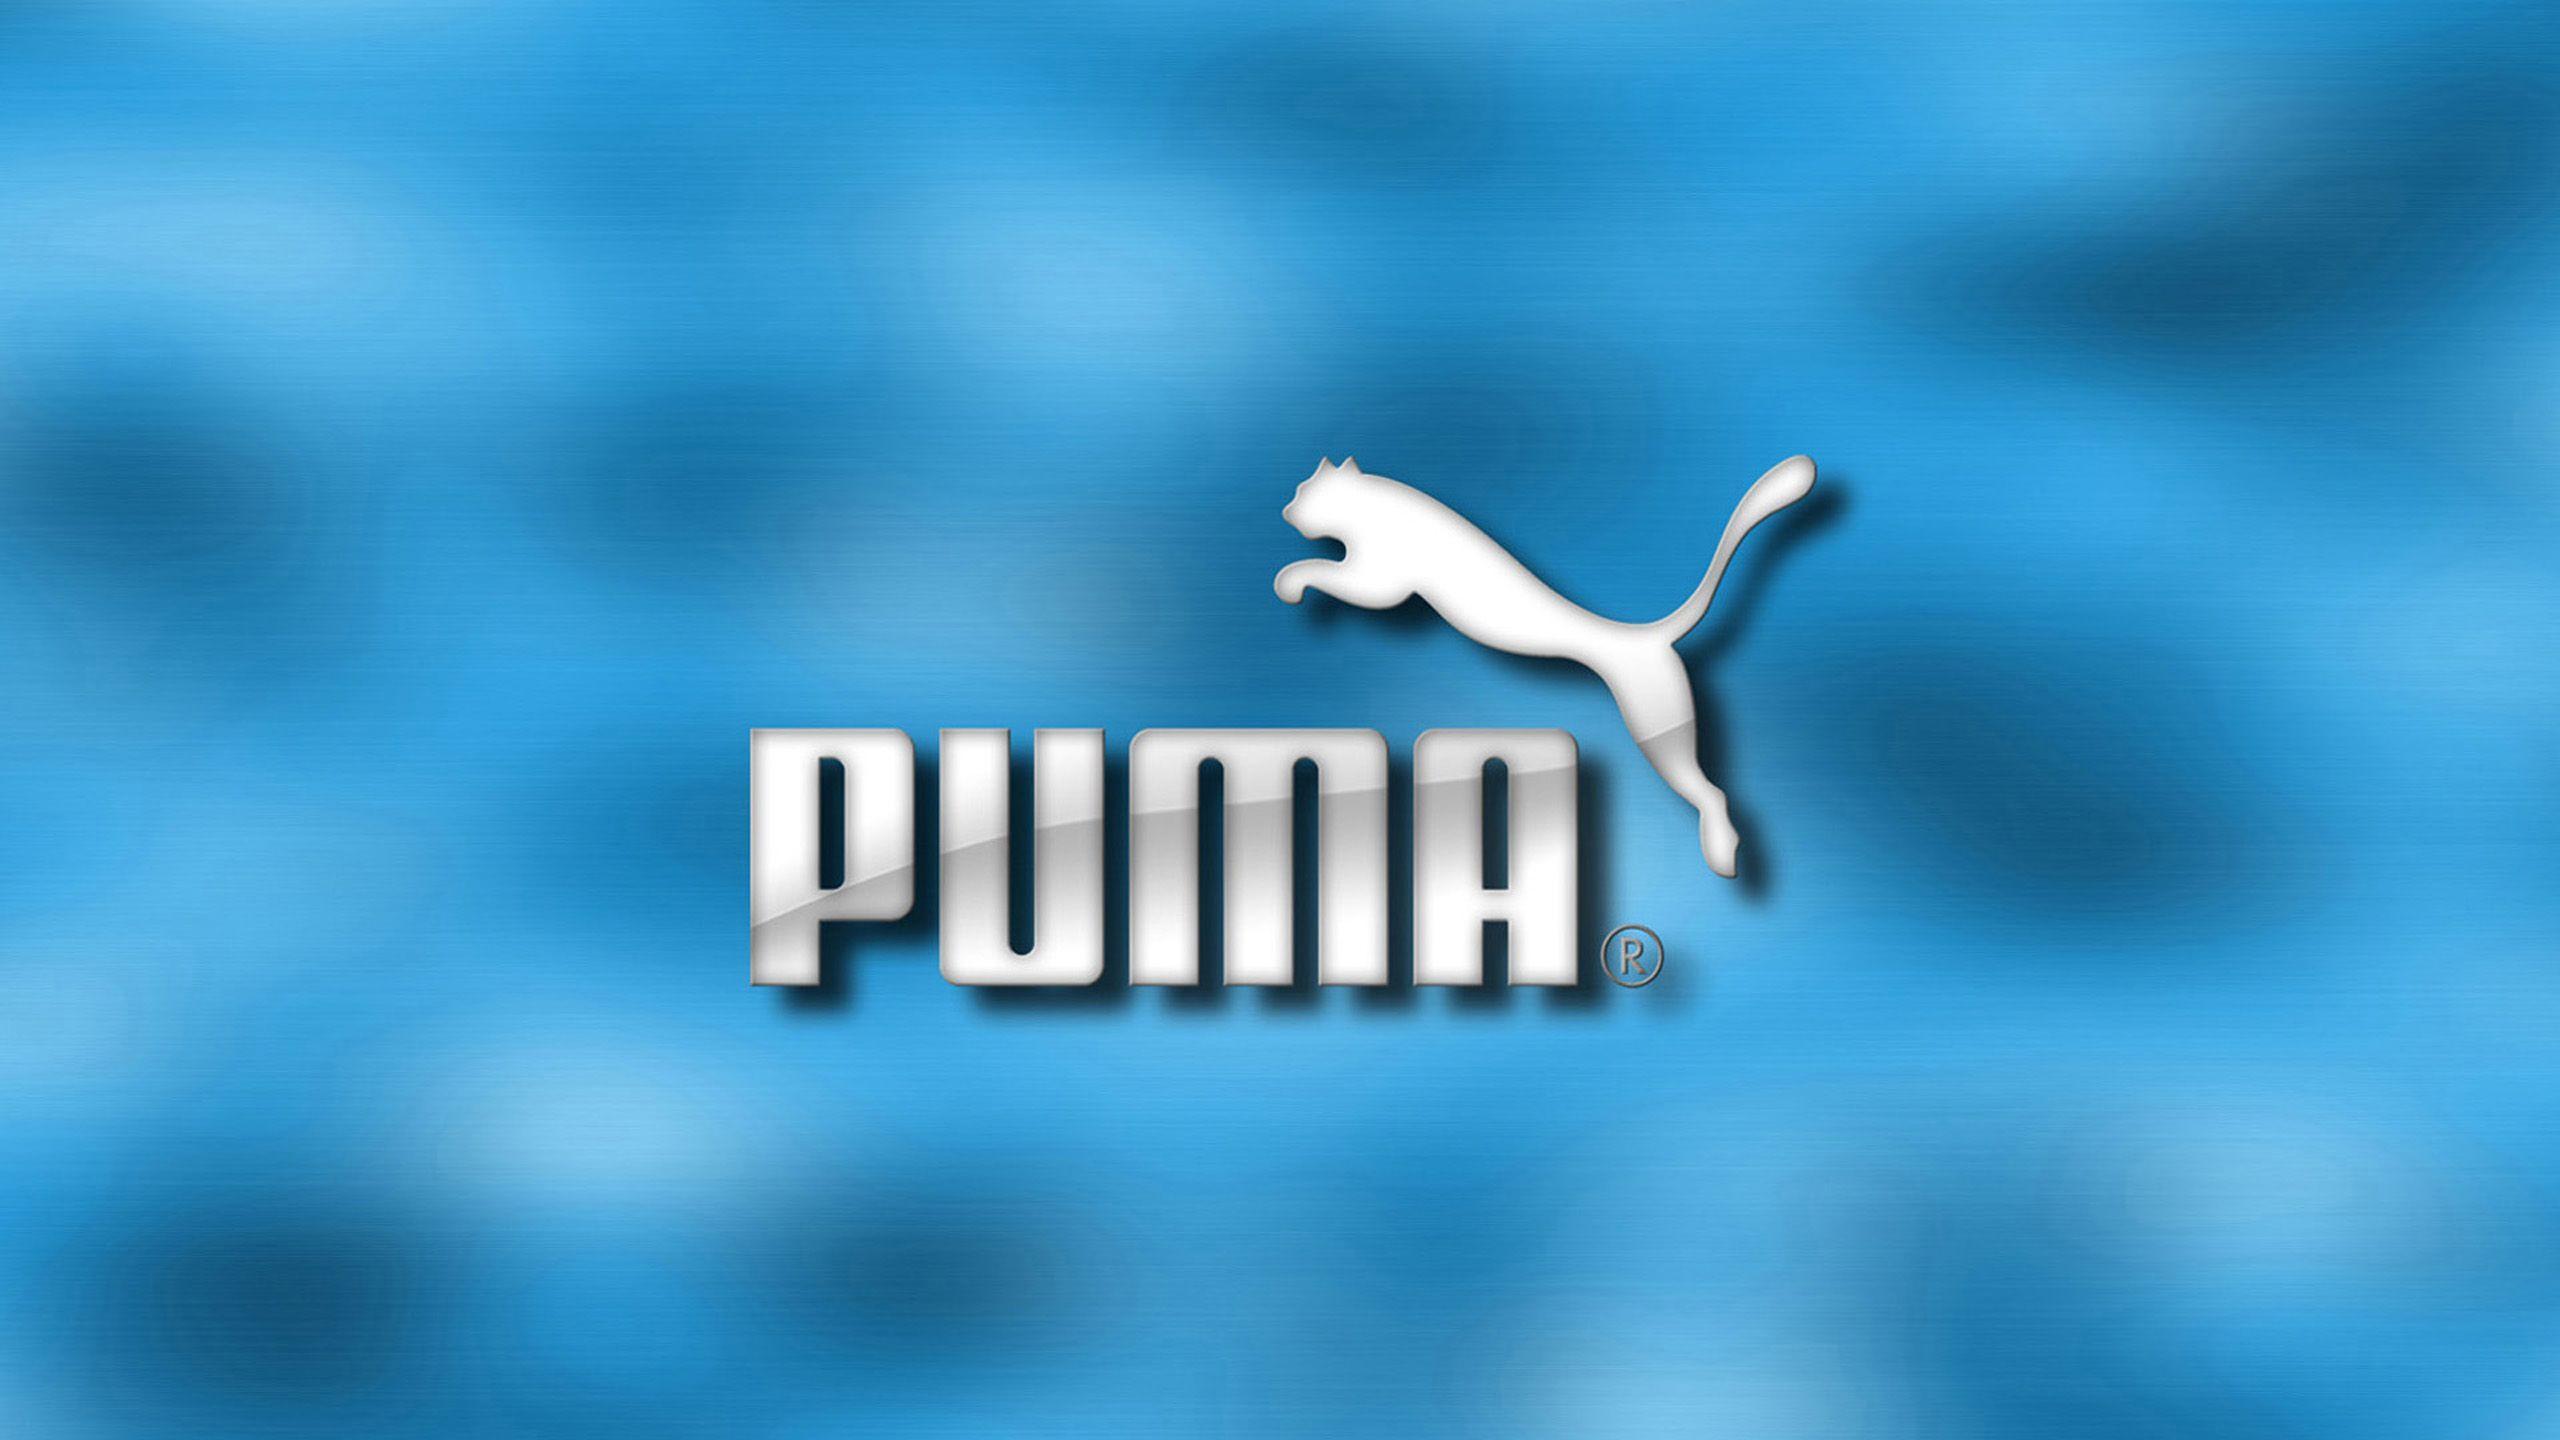 Puma Pc Wallpaper 4k